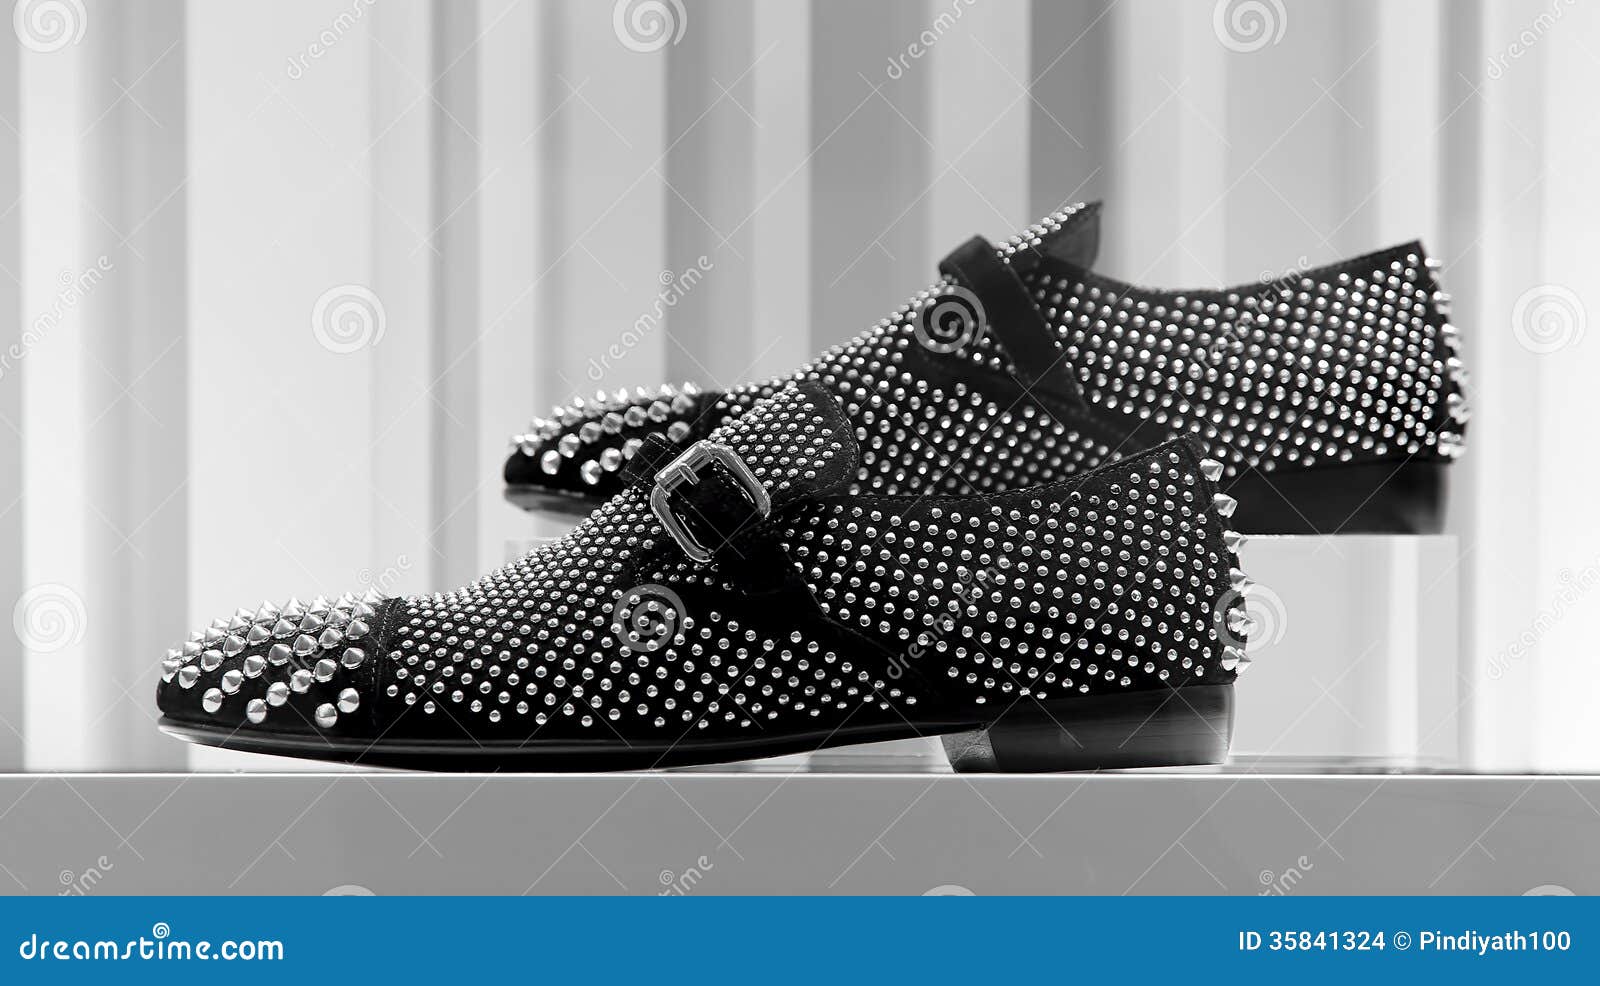 Elegant Shoes For Men Stock Images - Image: 35841324